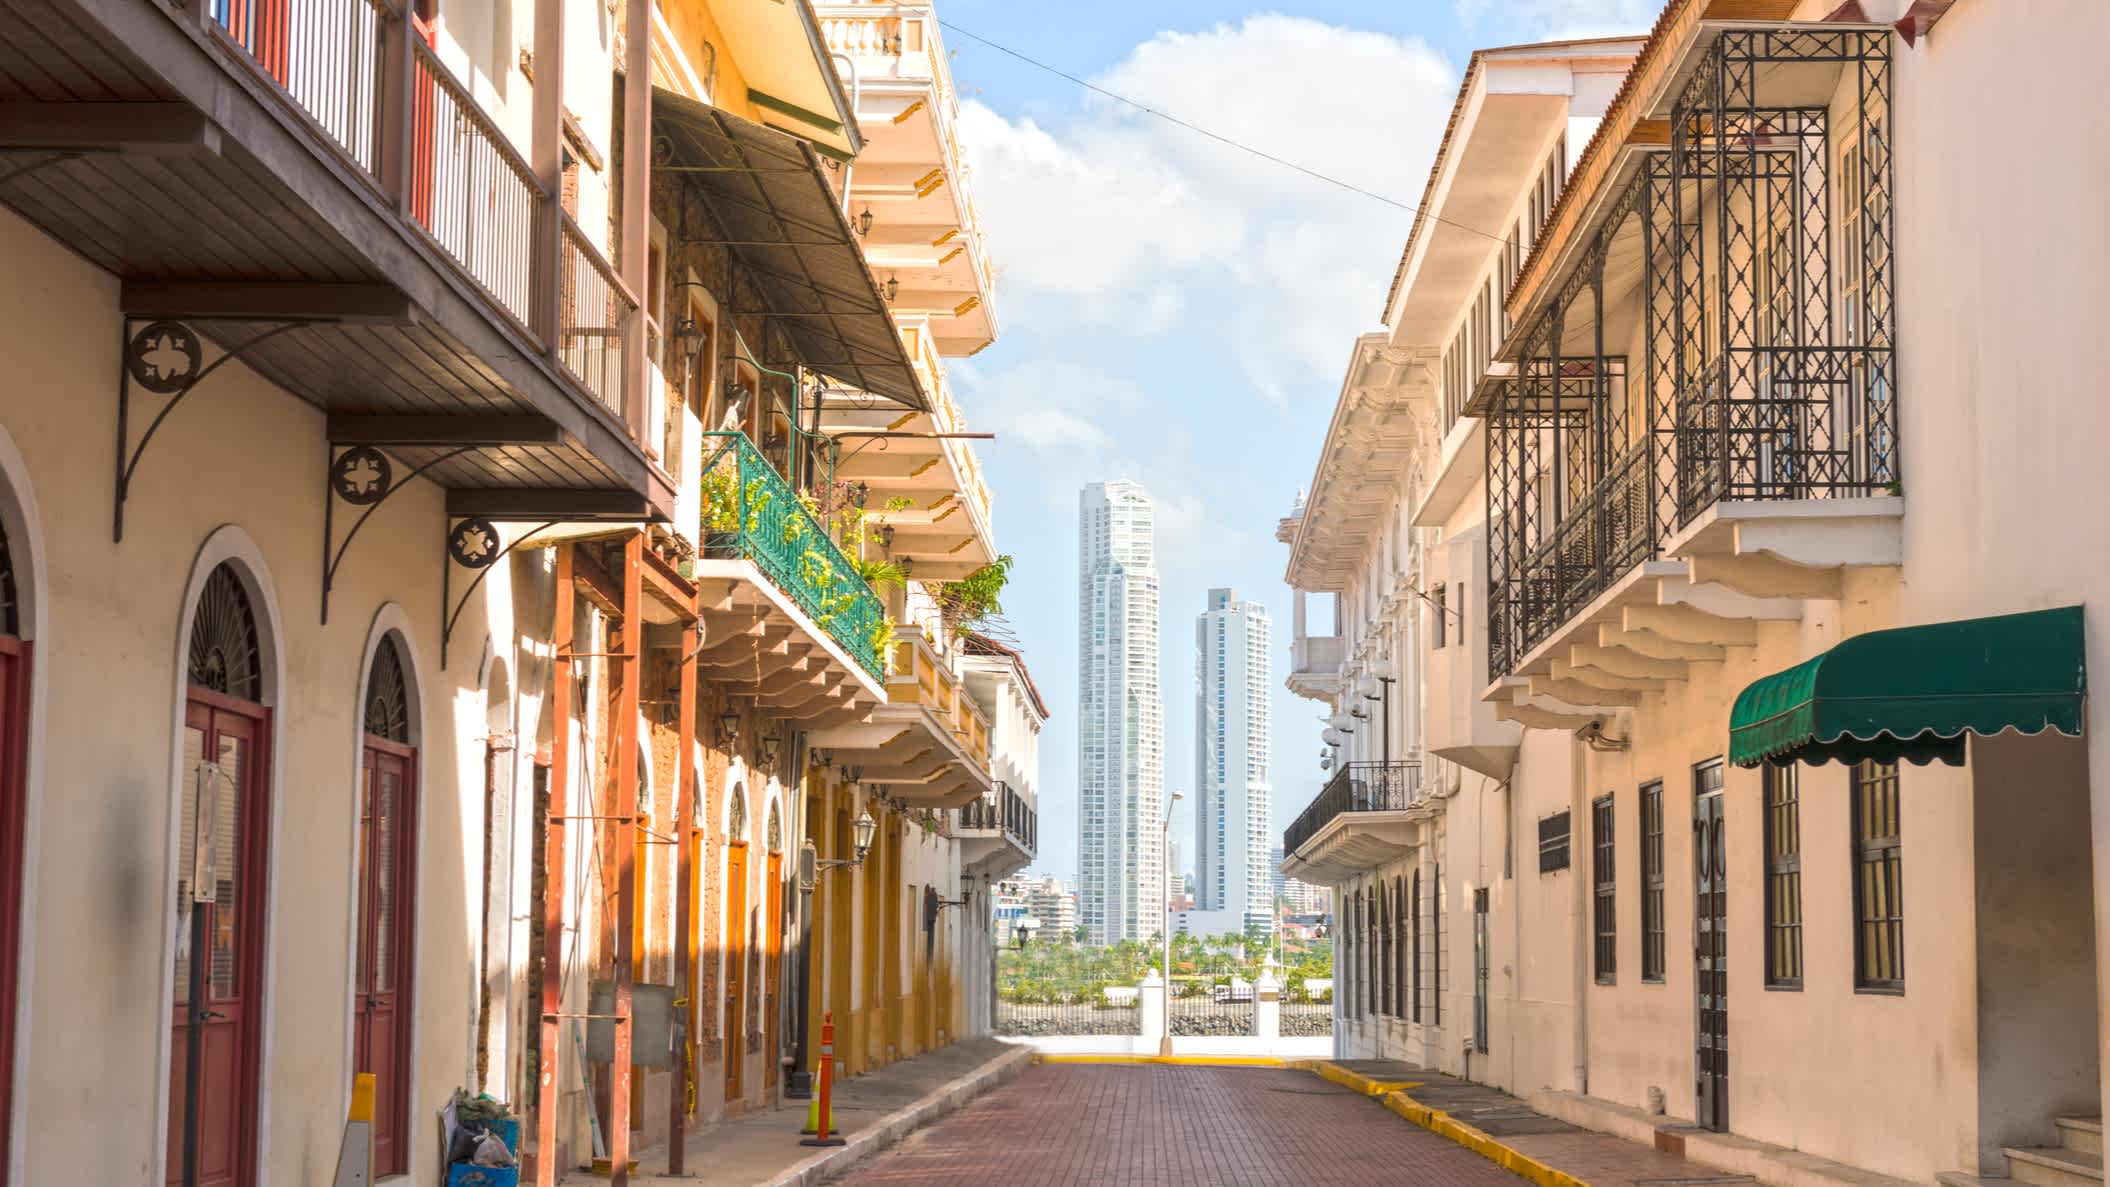 Casco Viejo Straße in einem alten Teil von Panama-Stadt